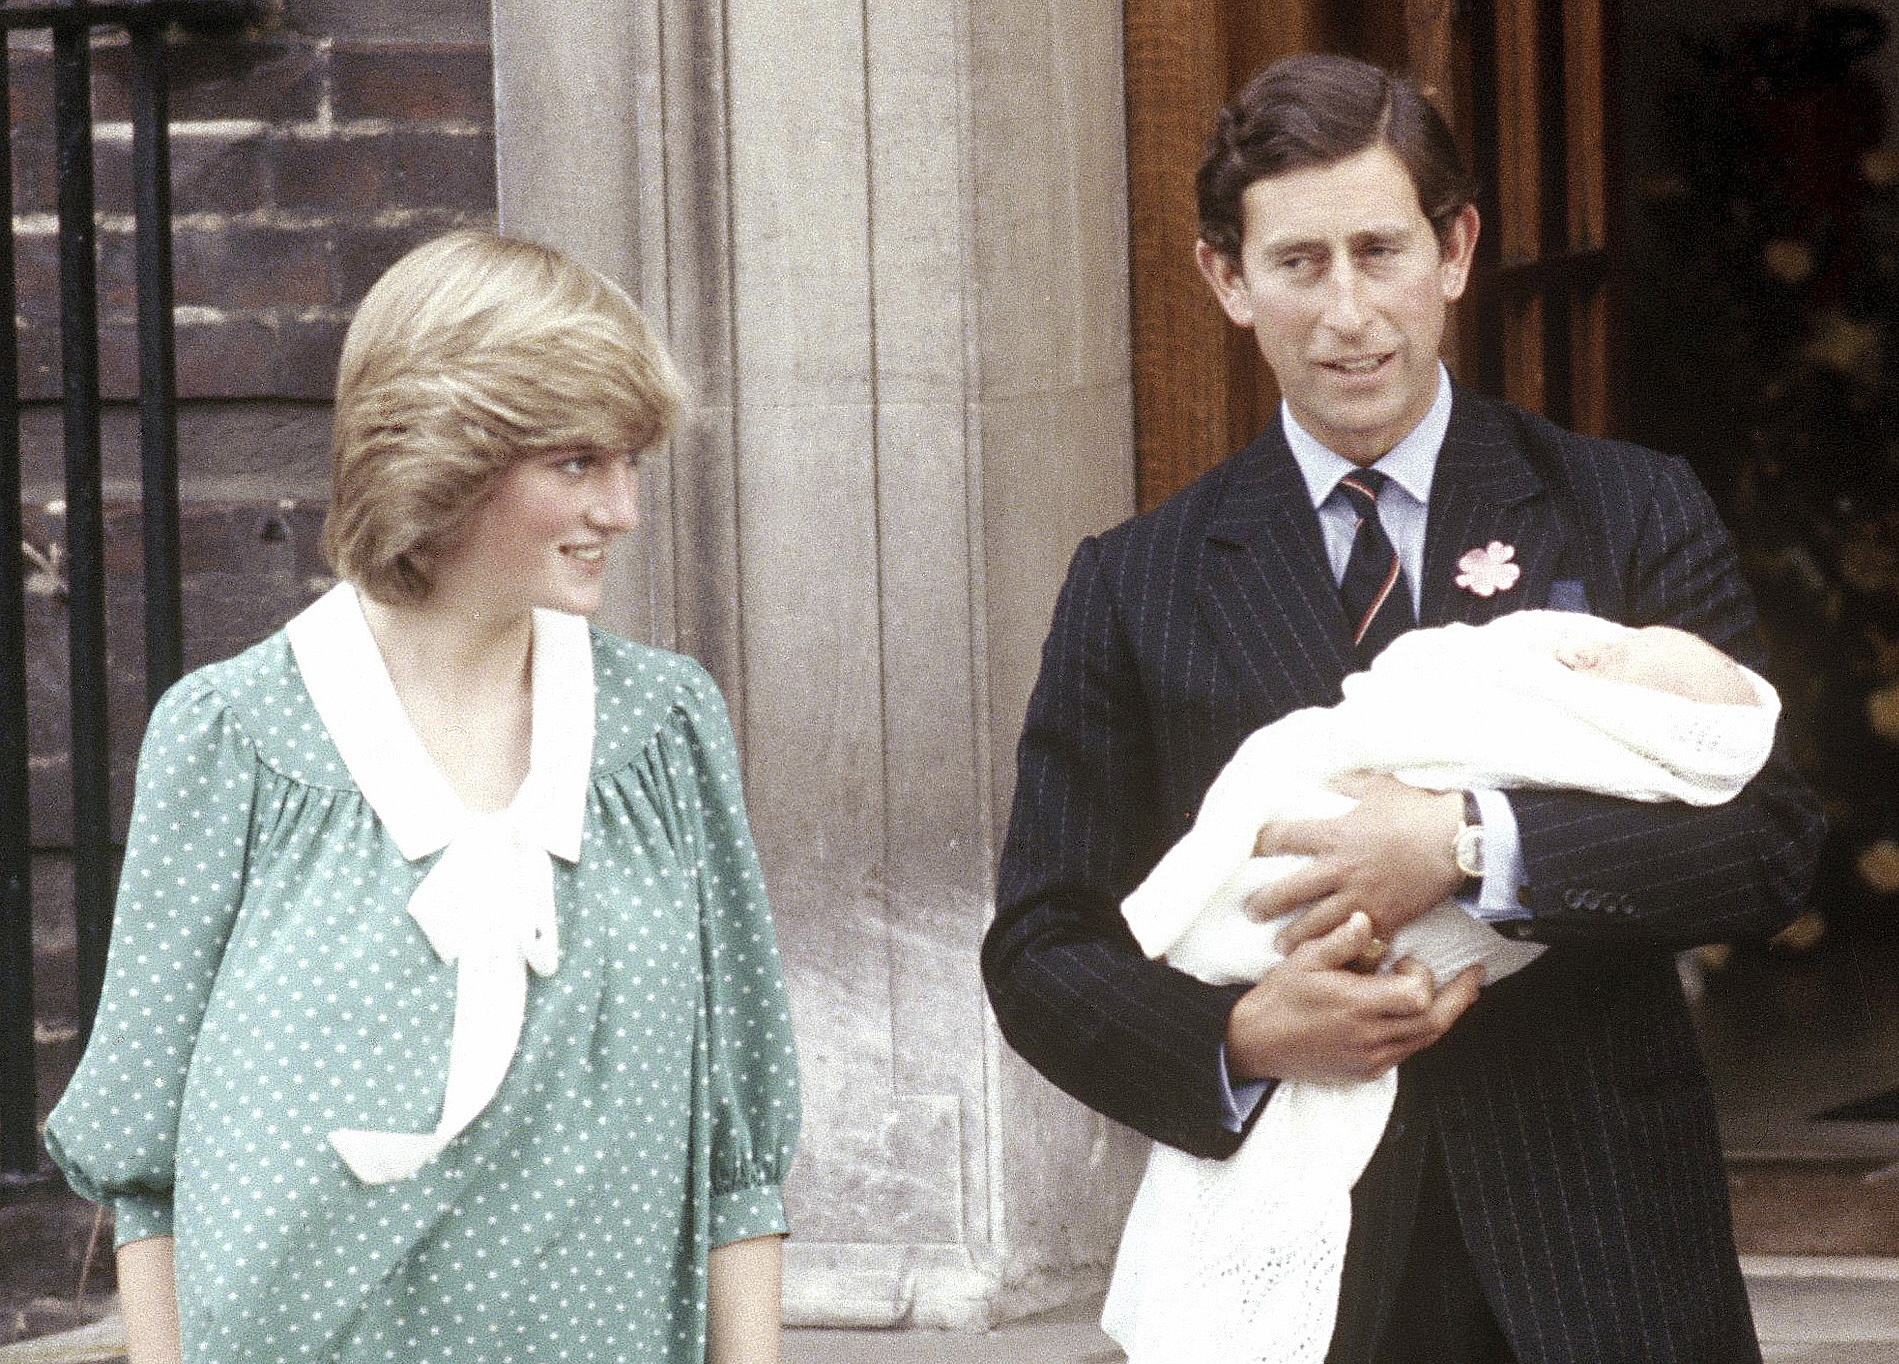 När prins William föddes, på samma sjukhus som hans son nu.